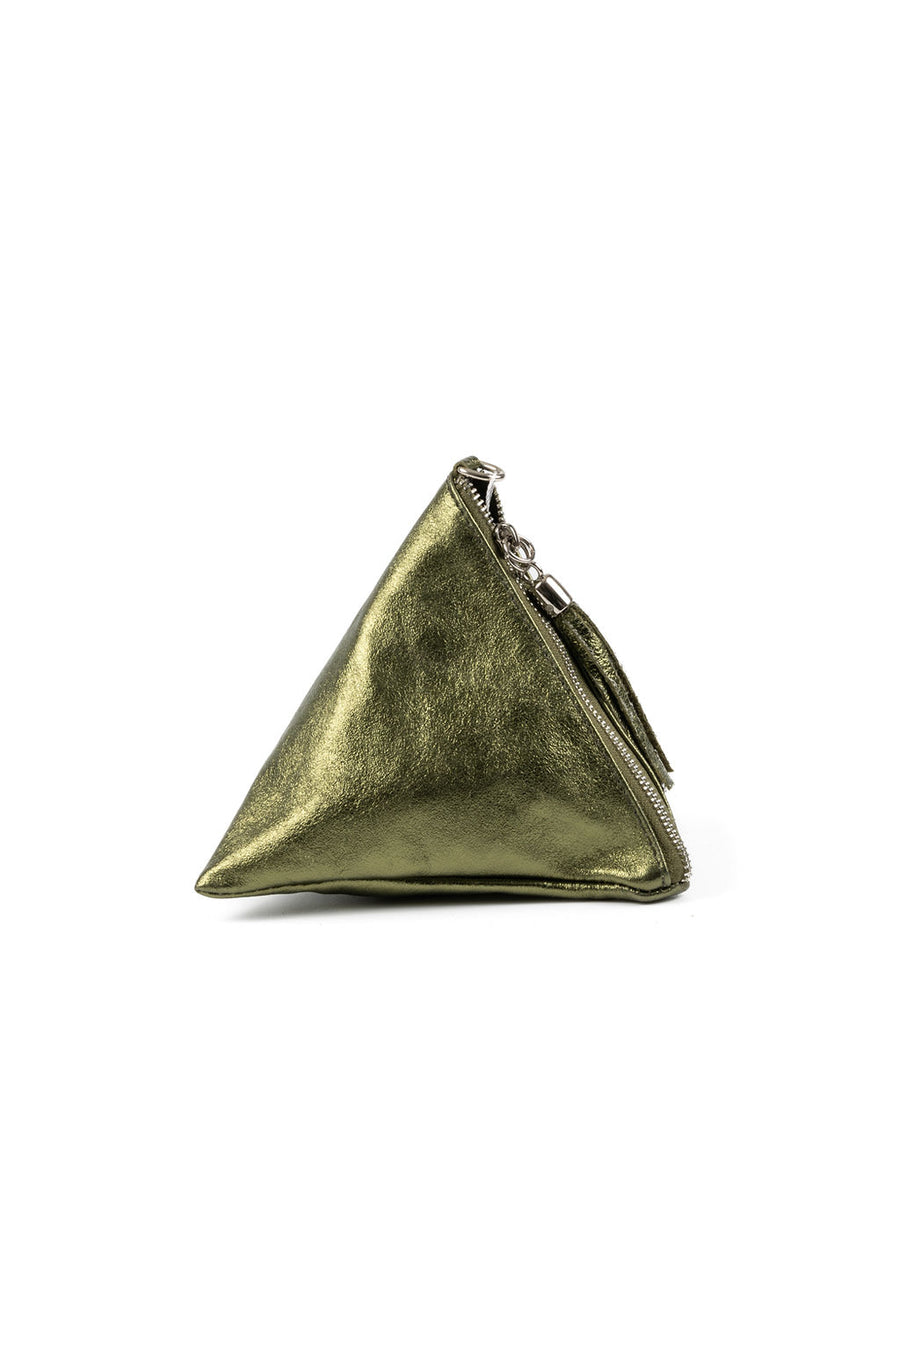 IL GIGLIO Pyramid Leather Bag